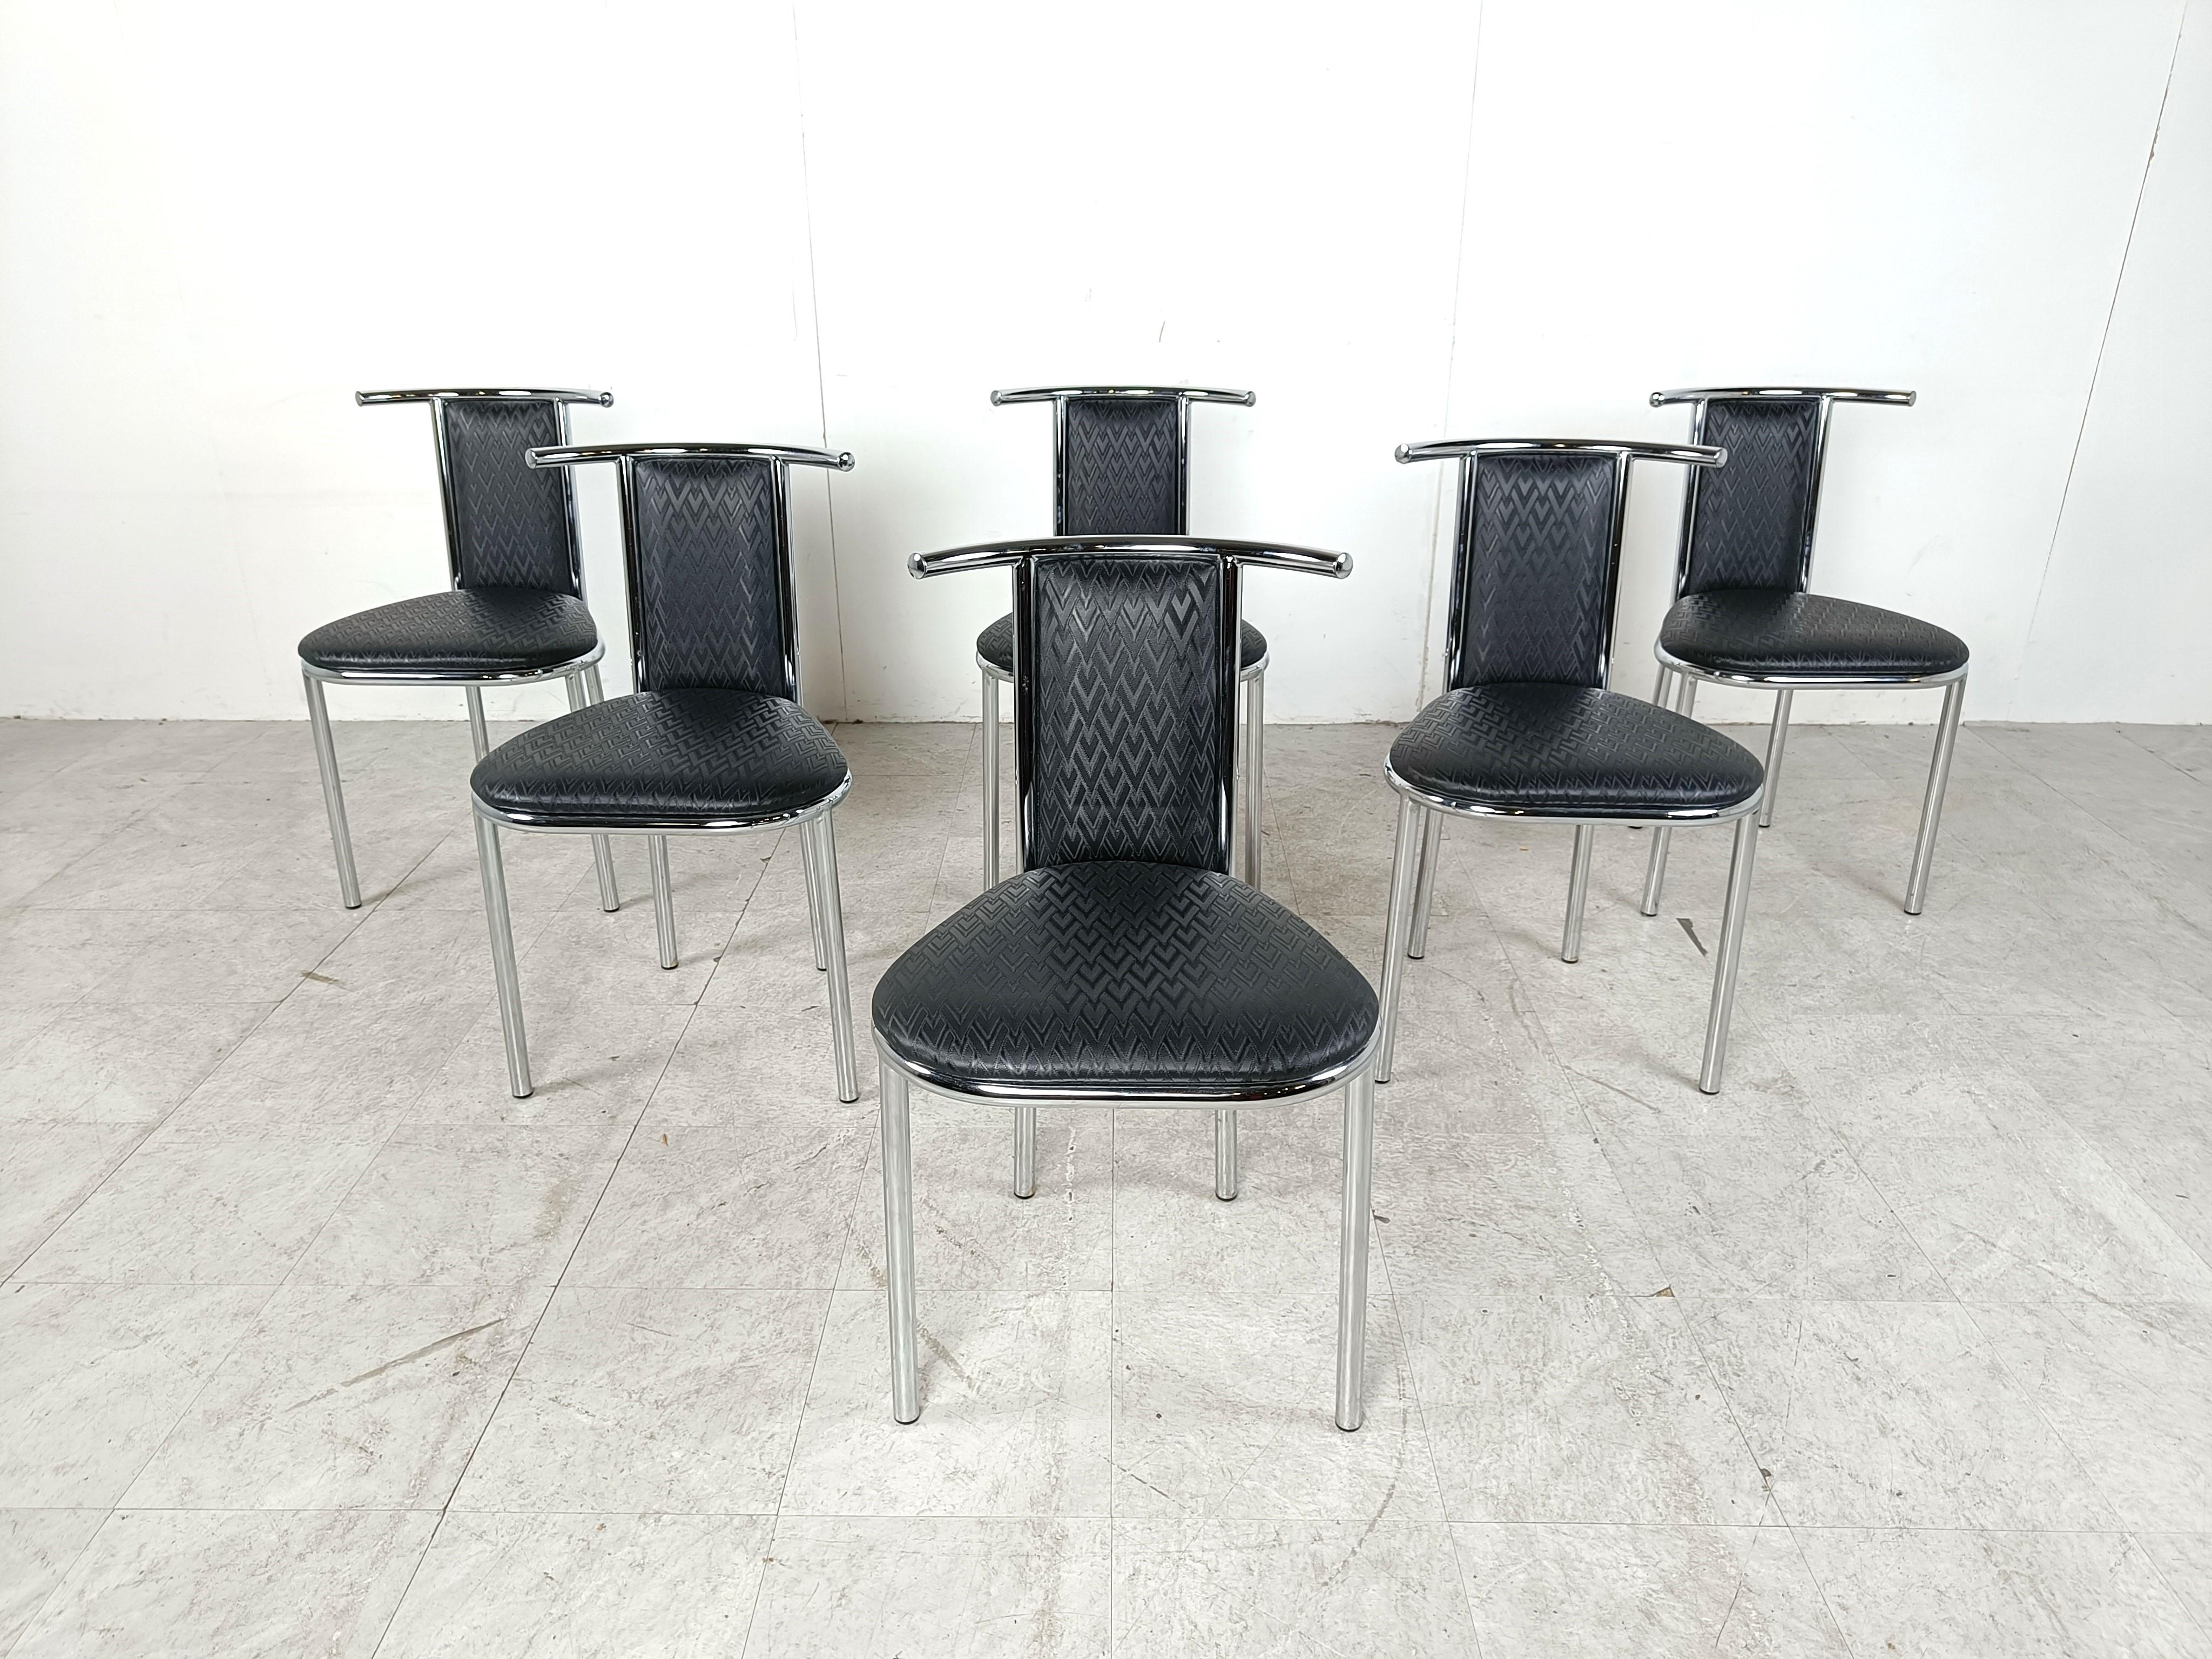 Set aus 6 postmodernen Esszimmerstühlen in auffälligem Design mit verchromtem Gestell und Skai-Polsterung mit coolem Muster.

Guter Zustand

1980er Jahre - Belgien

Abmessungen:
Höhe: 78cm/30.70